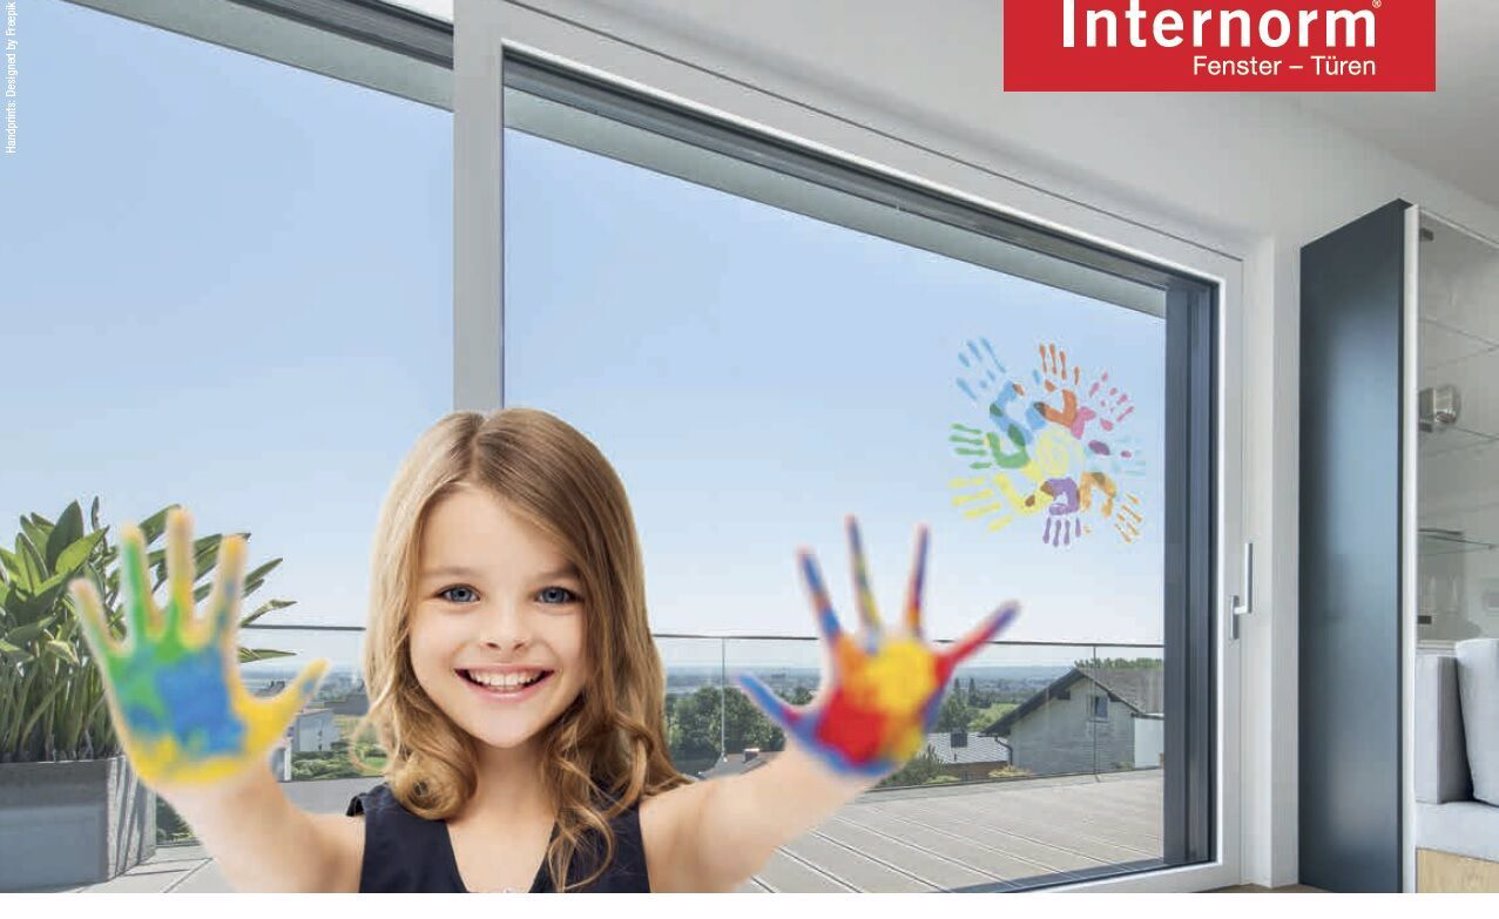 Trwa akcja specjalna Internorm: powłoka szklana SolarXPlus gratis do każdego okna